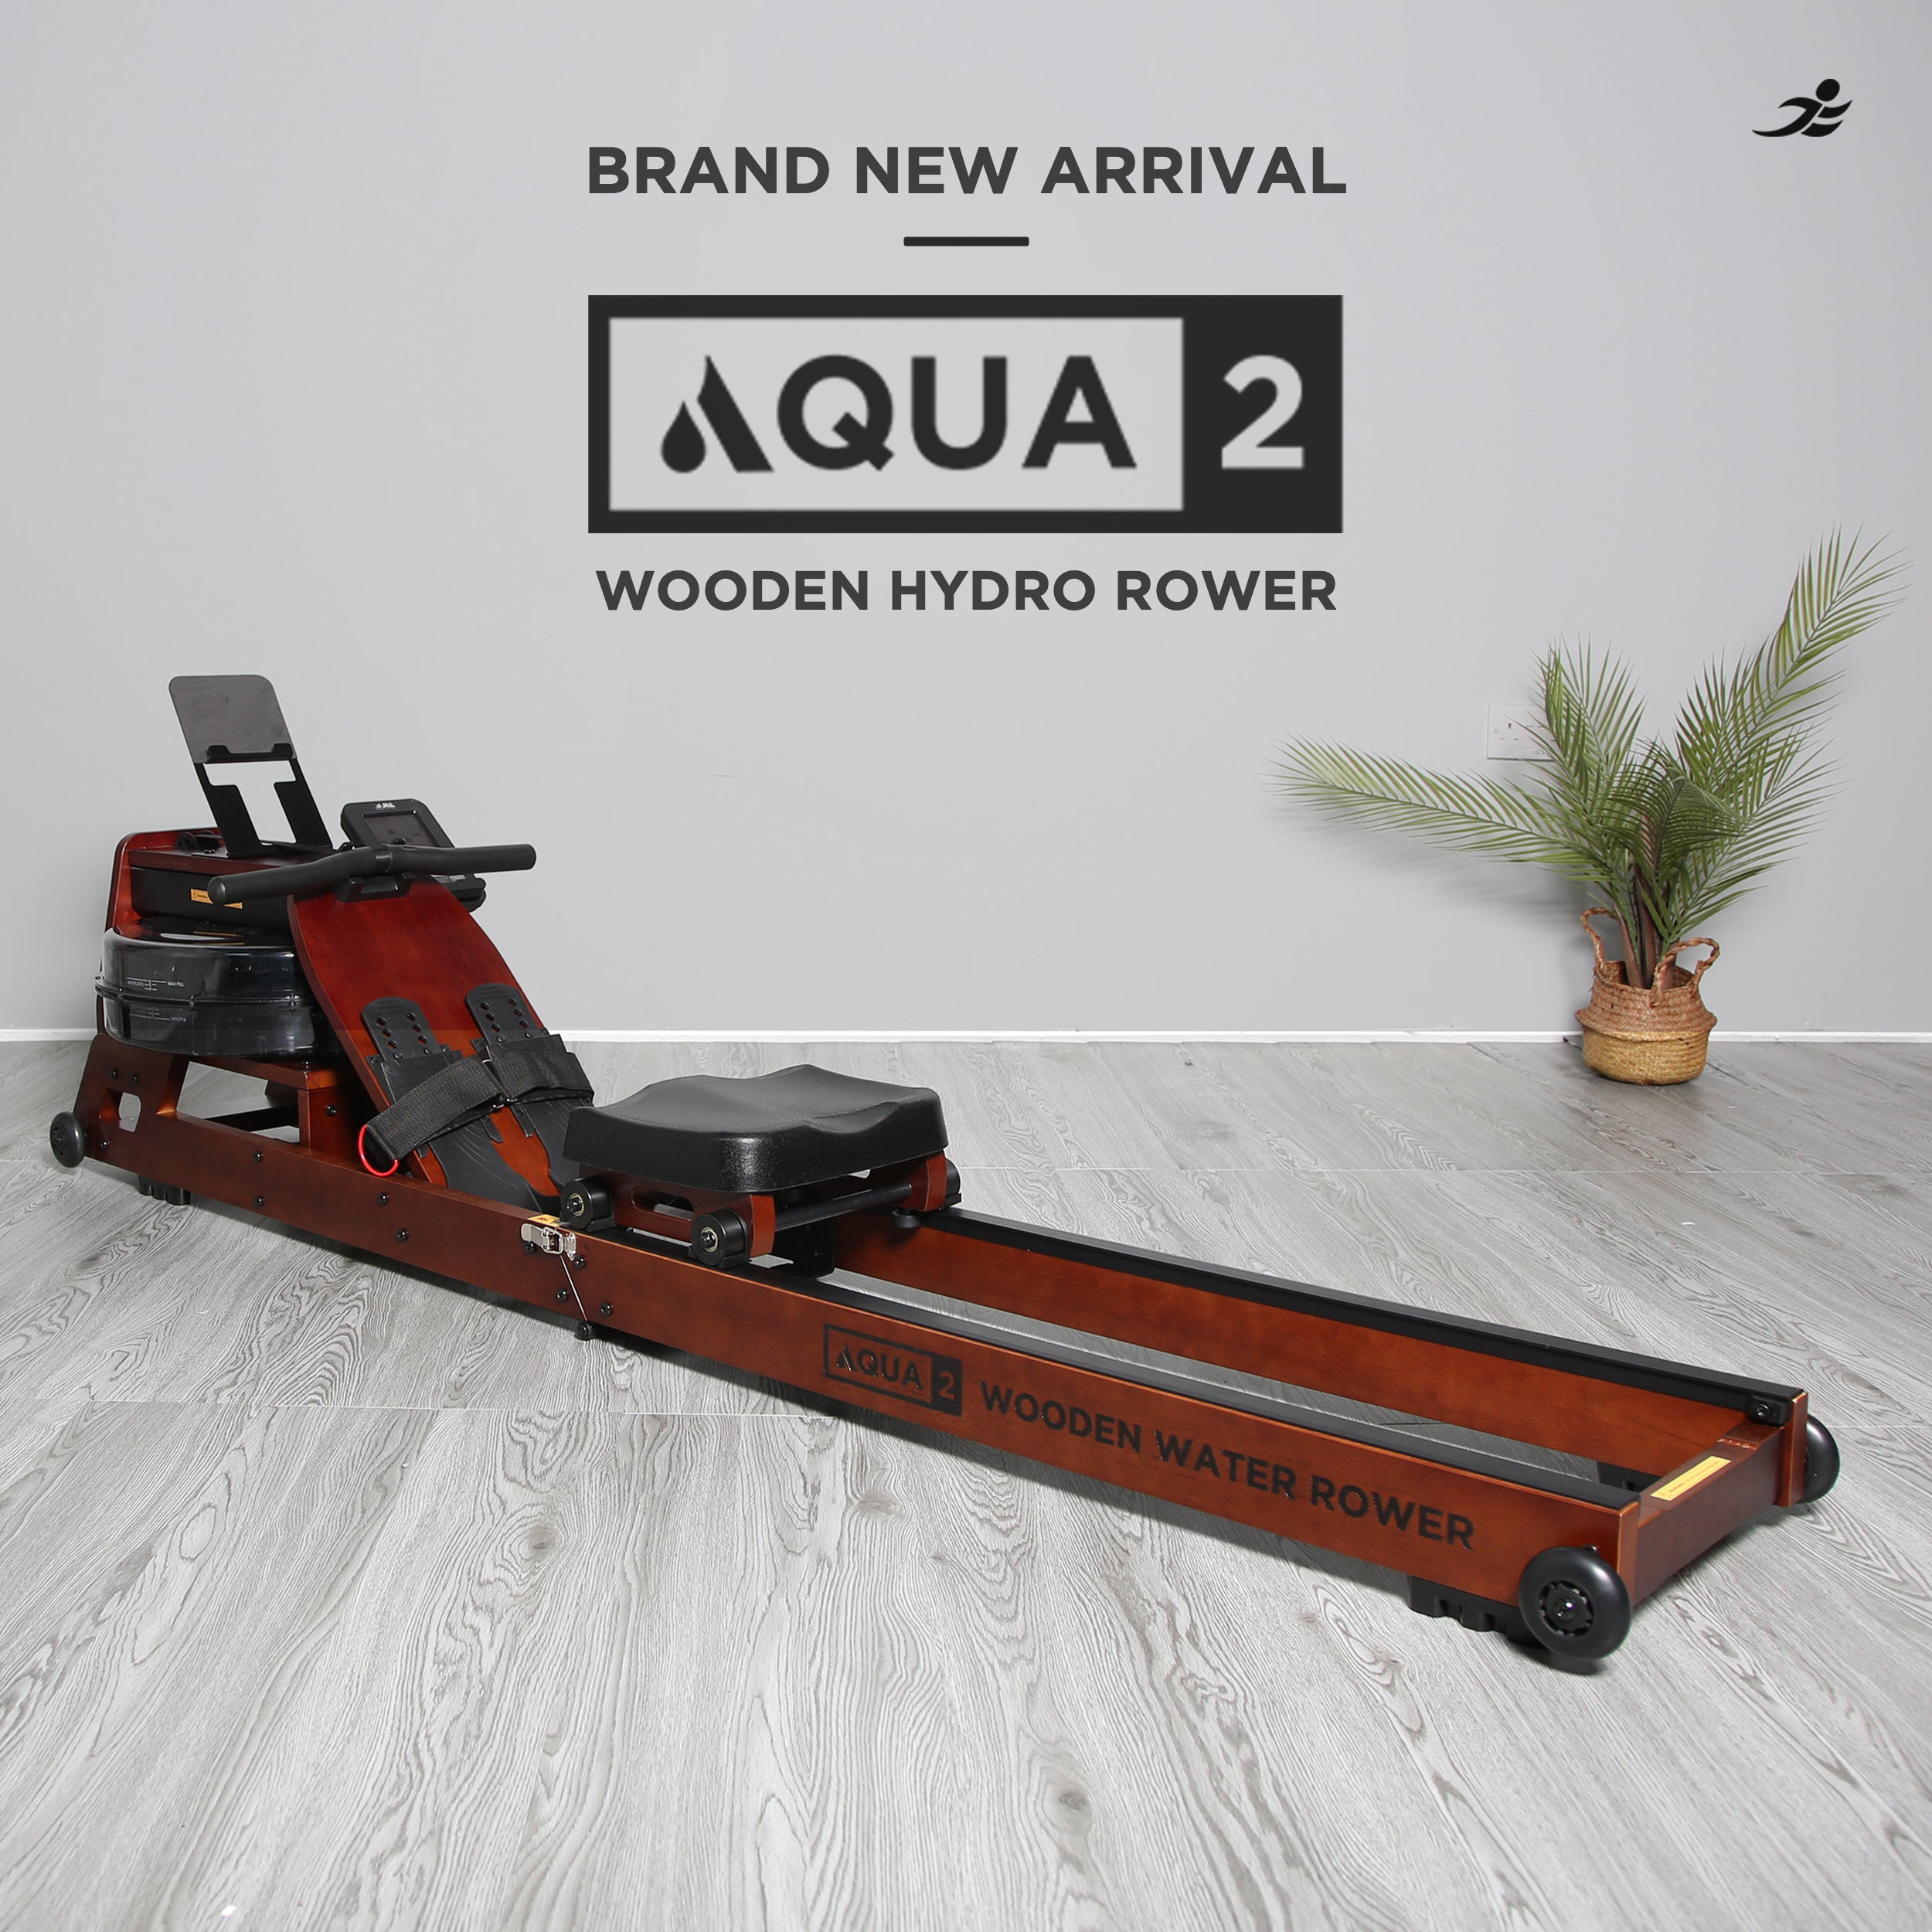 Aqua 2 Wooden Hydro Rower